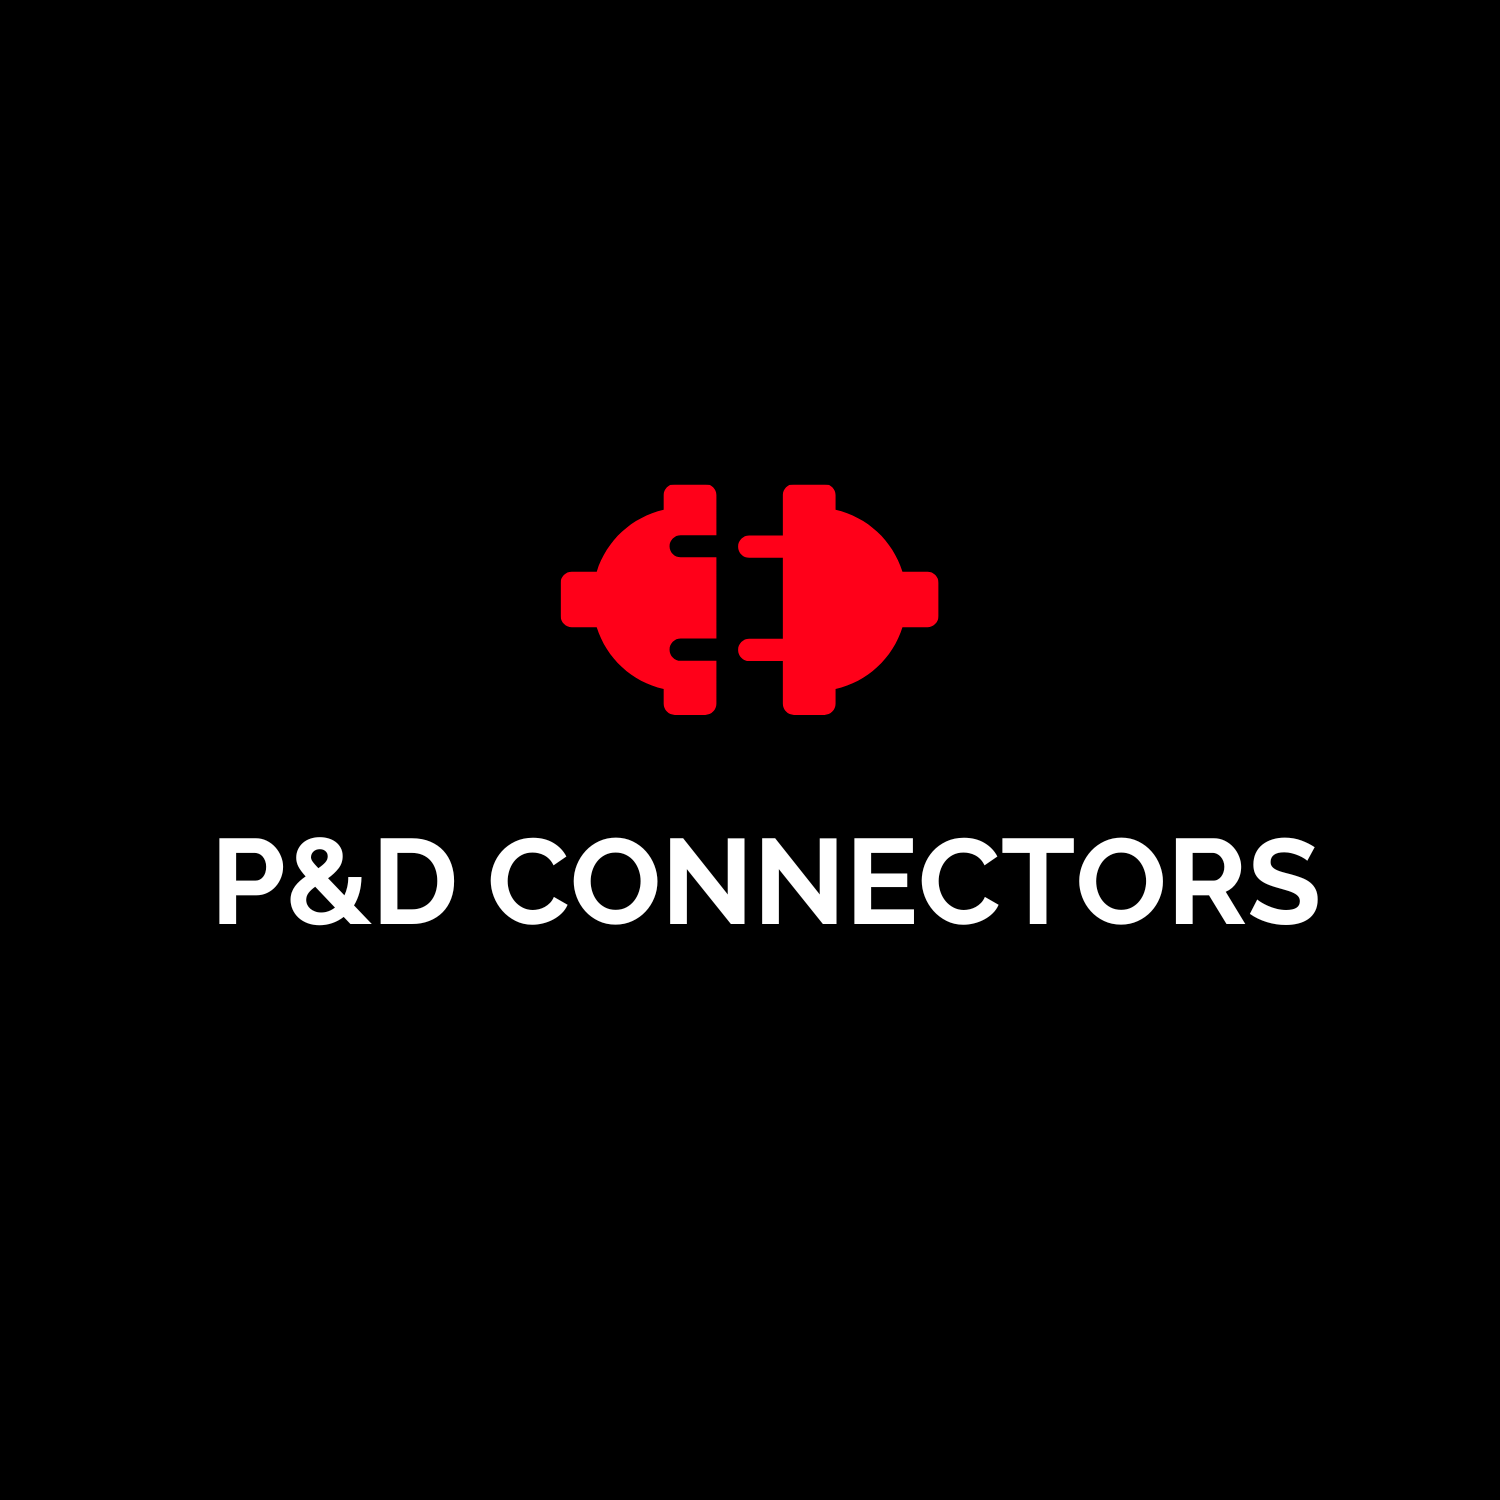 P&D Connectors